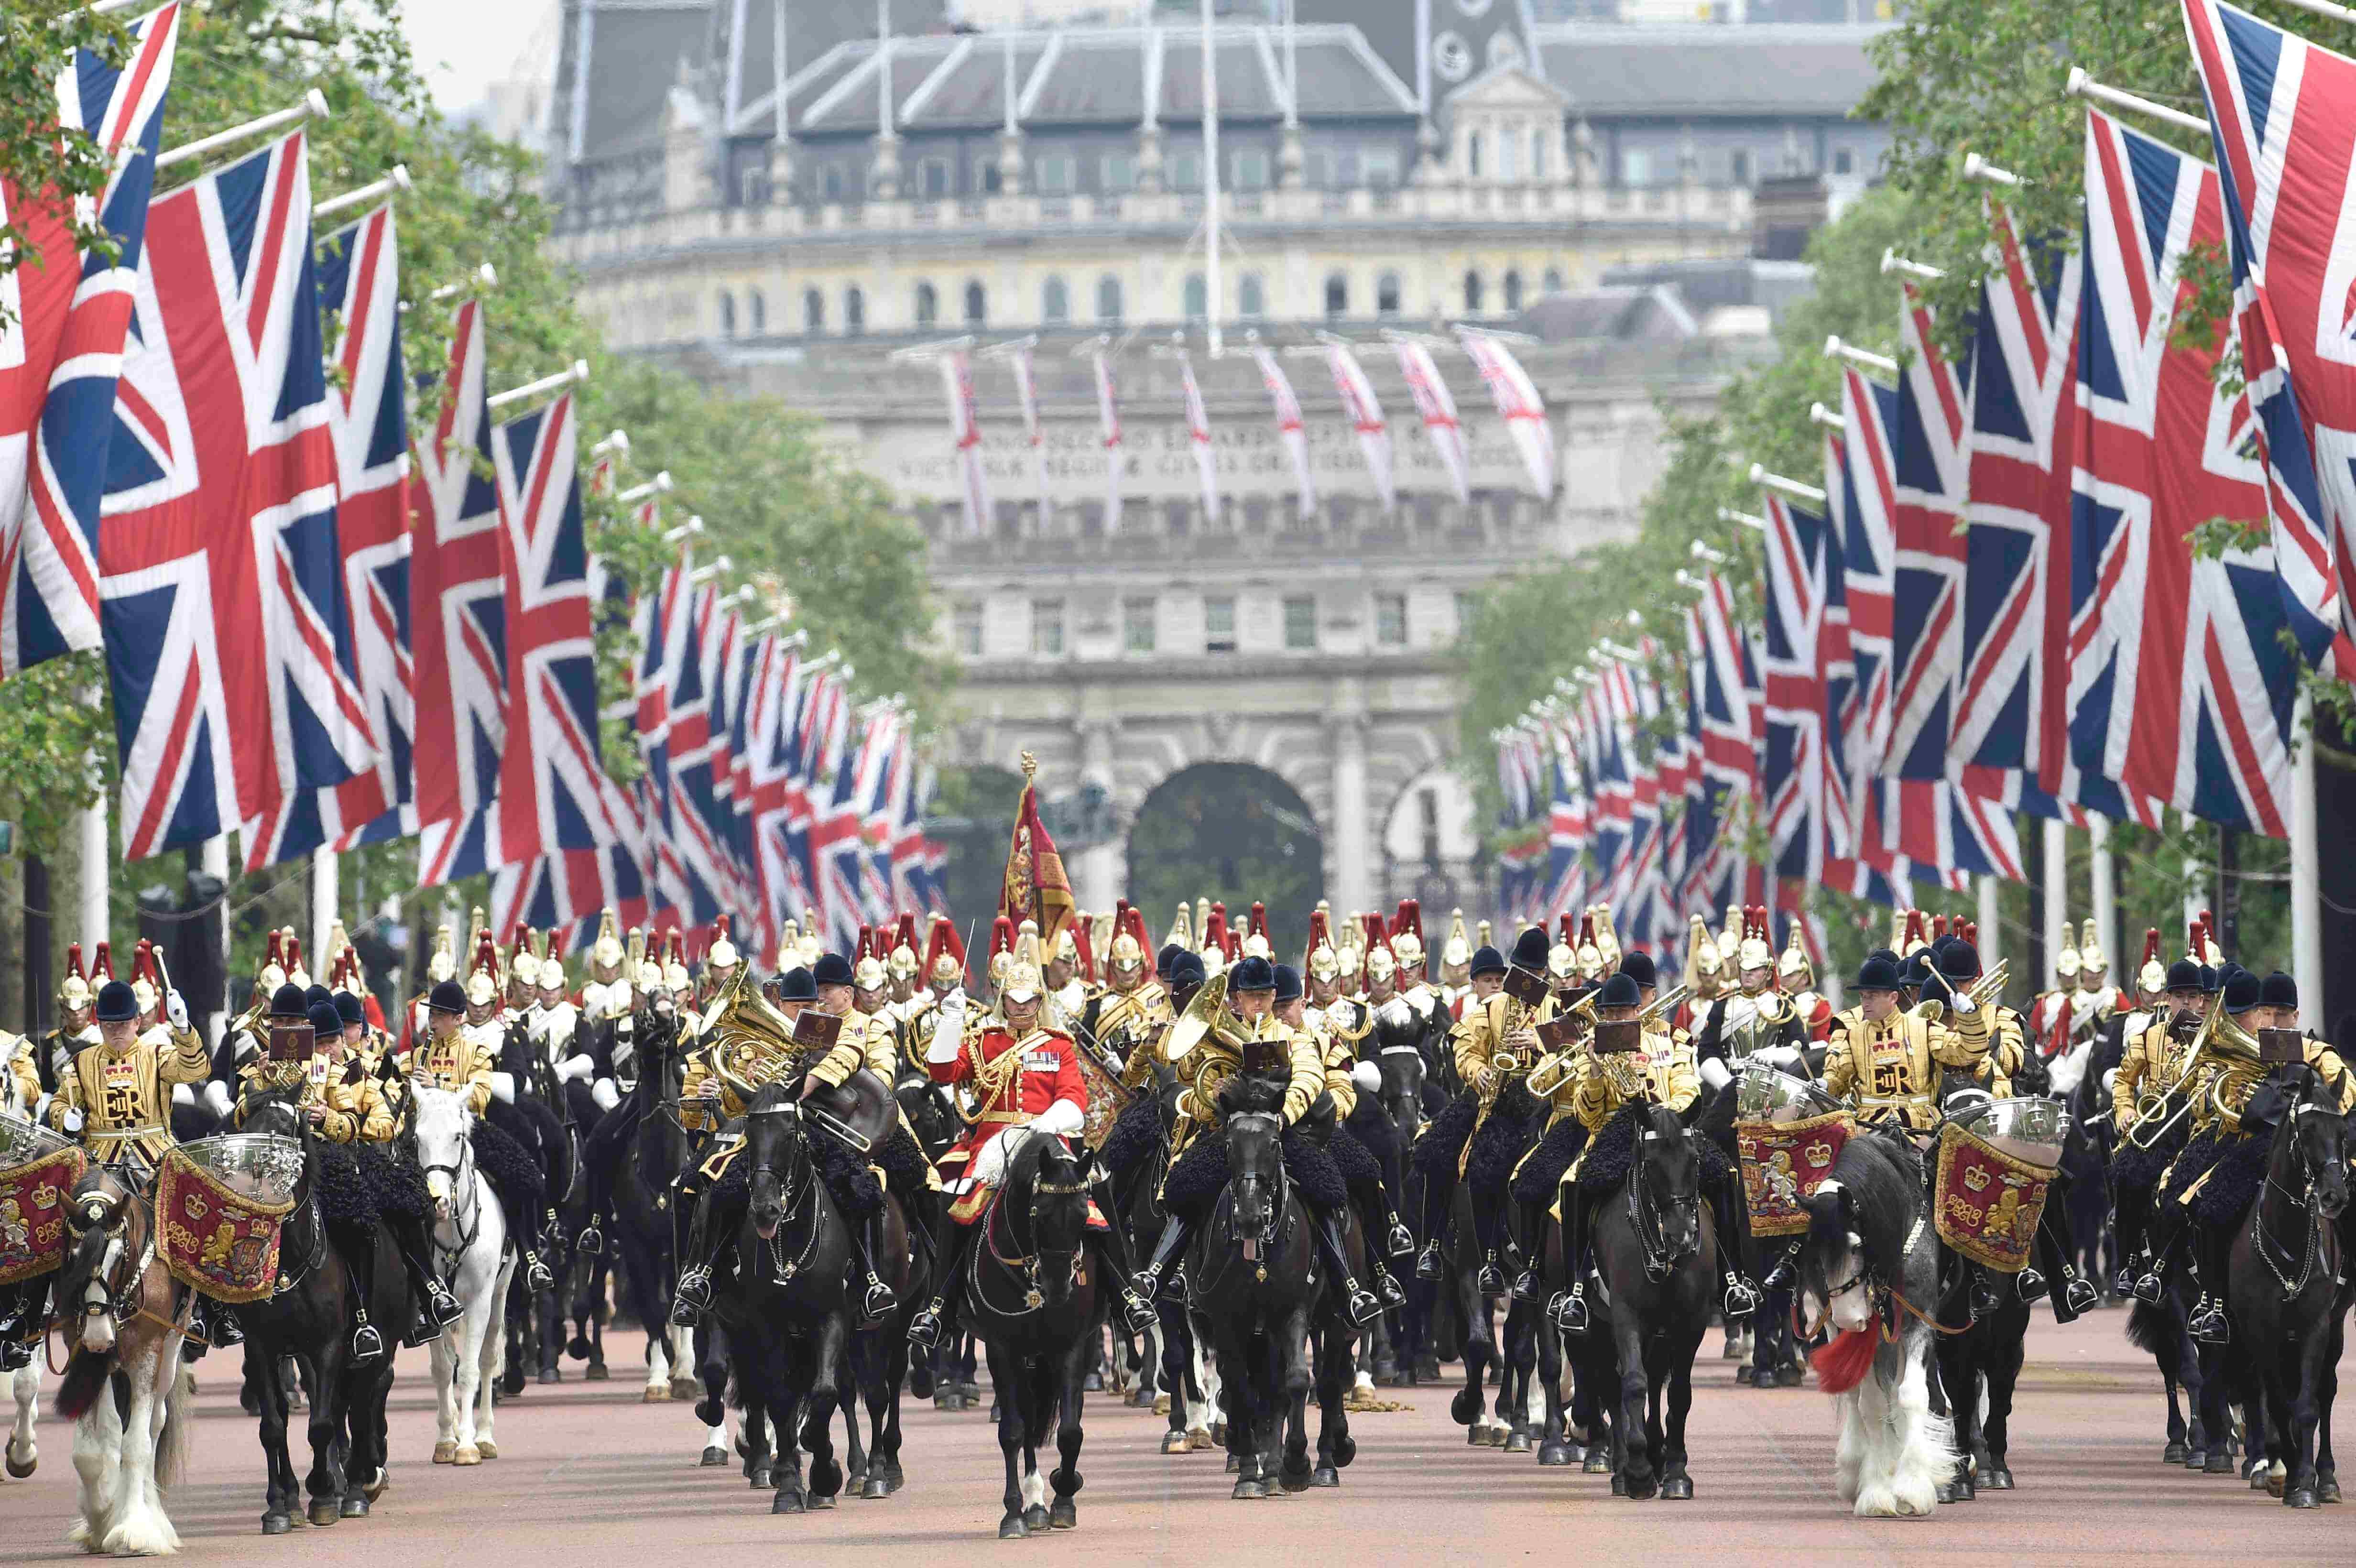 Парад конной гвардии в Лондоне. Плац-парад королевской конной гвардии. Парад ВВС Trooping the Colour. The Trooping of the Colour в Великобритании.